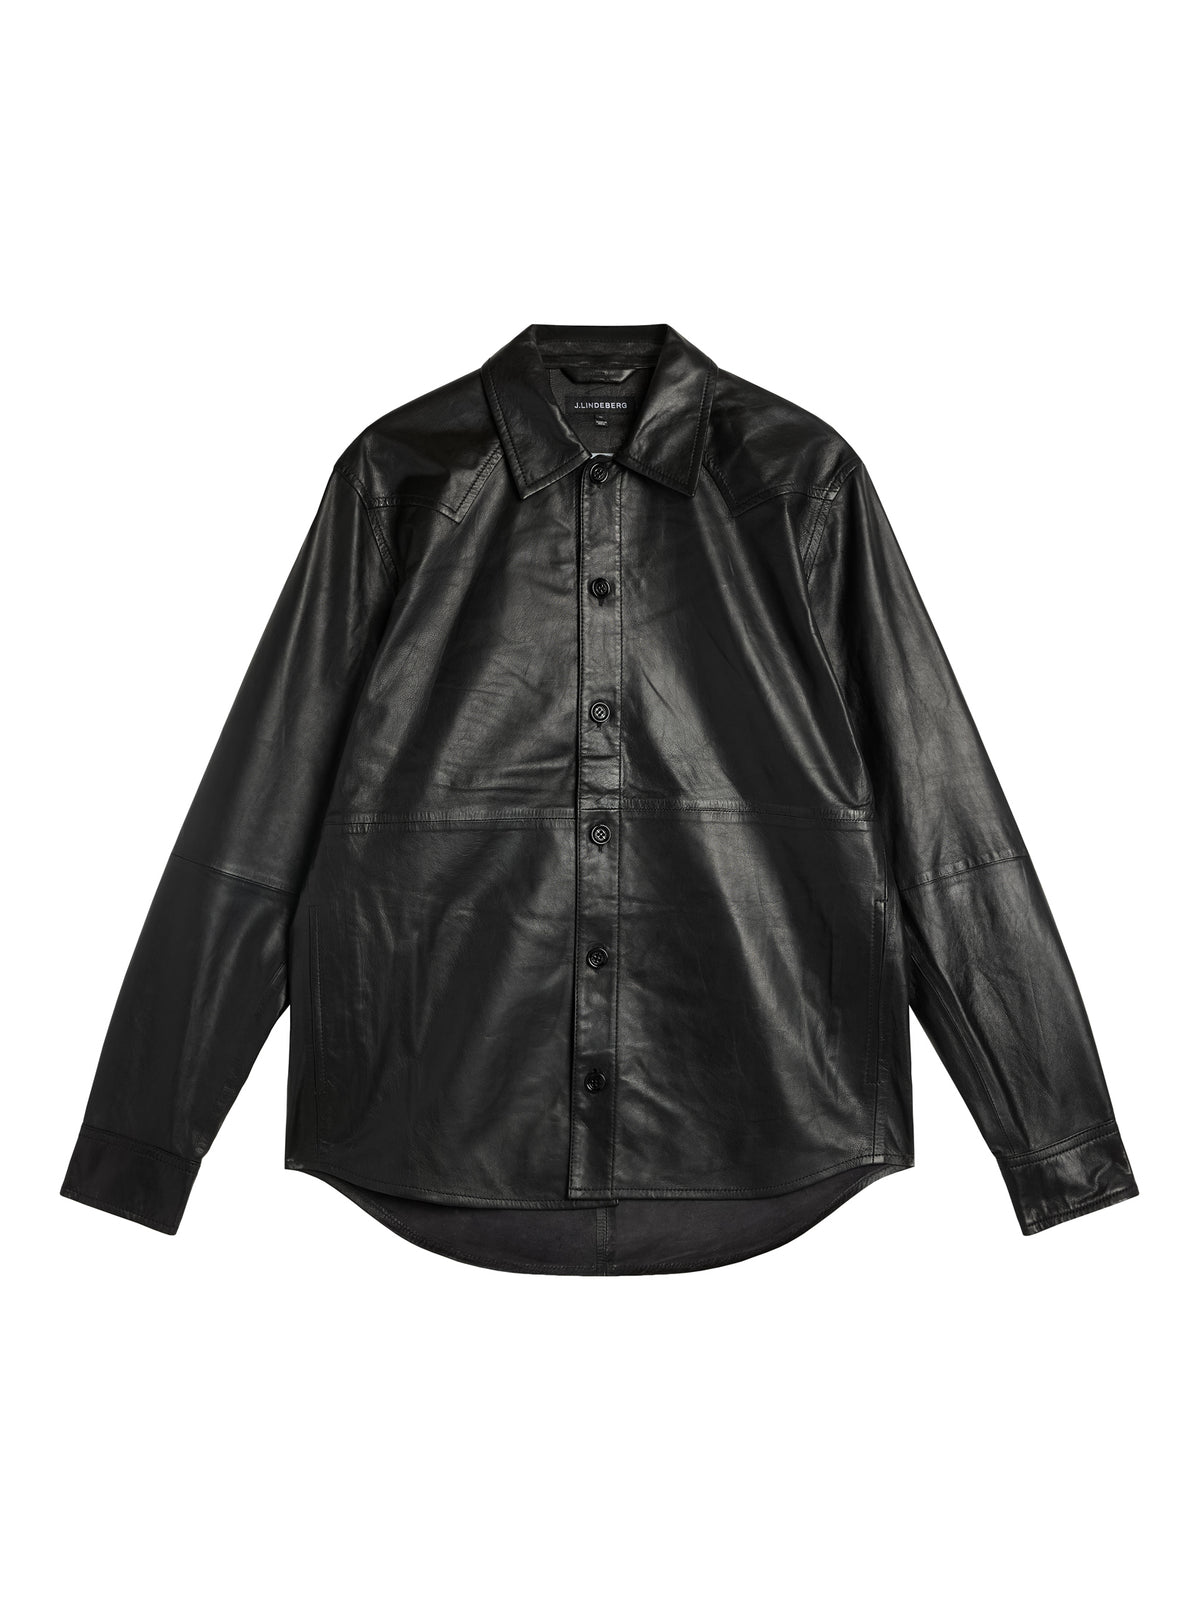 Landon Leather overshirt / Black